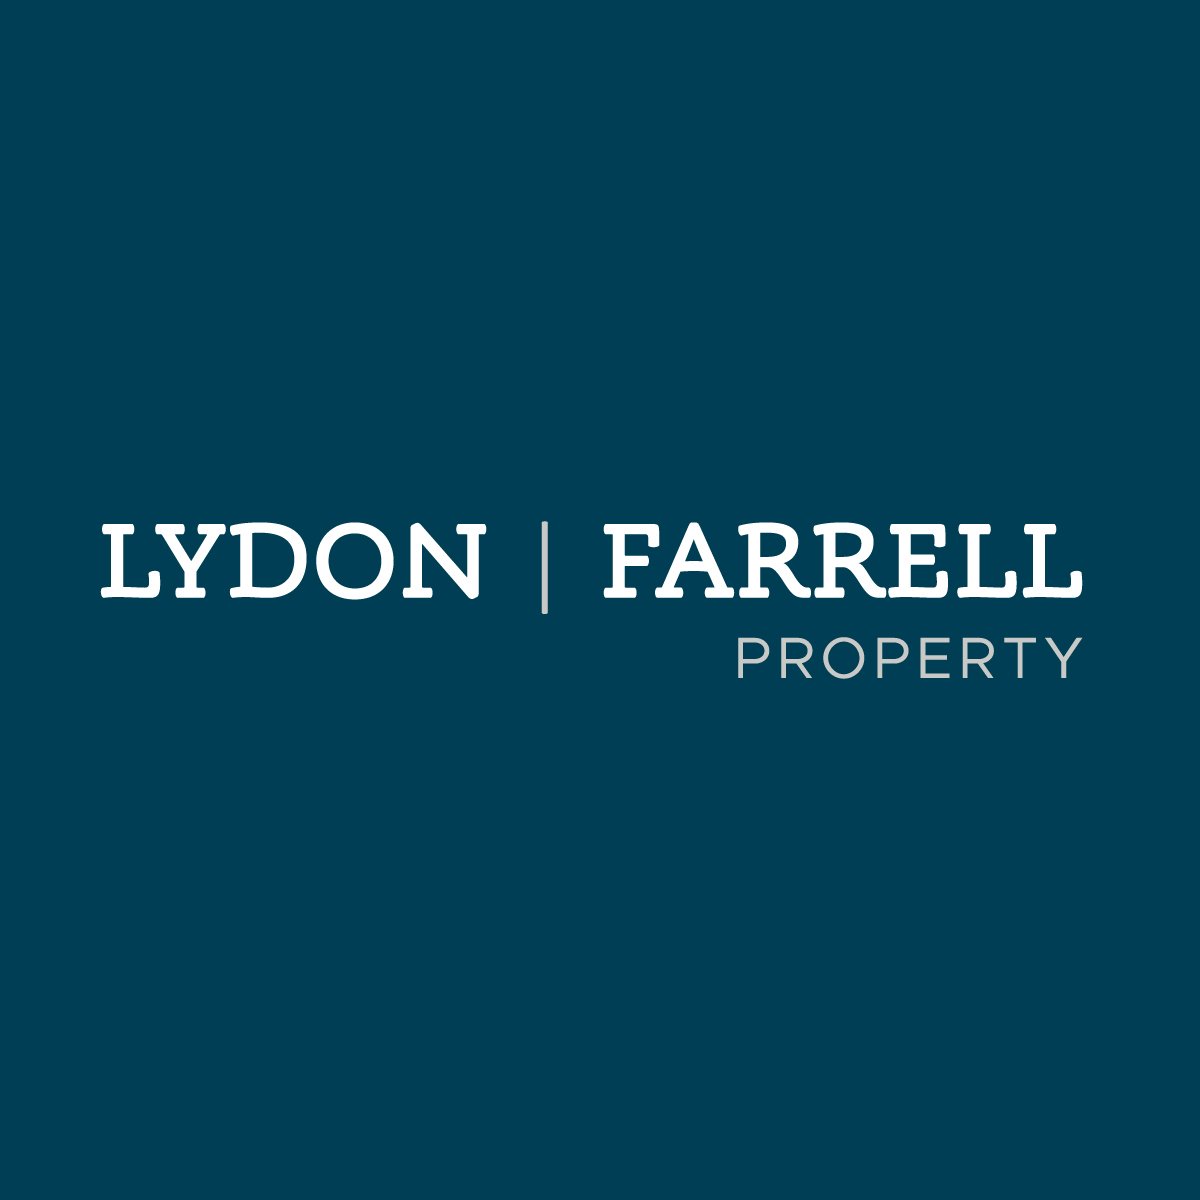 Lydon Farrell Property